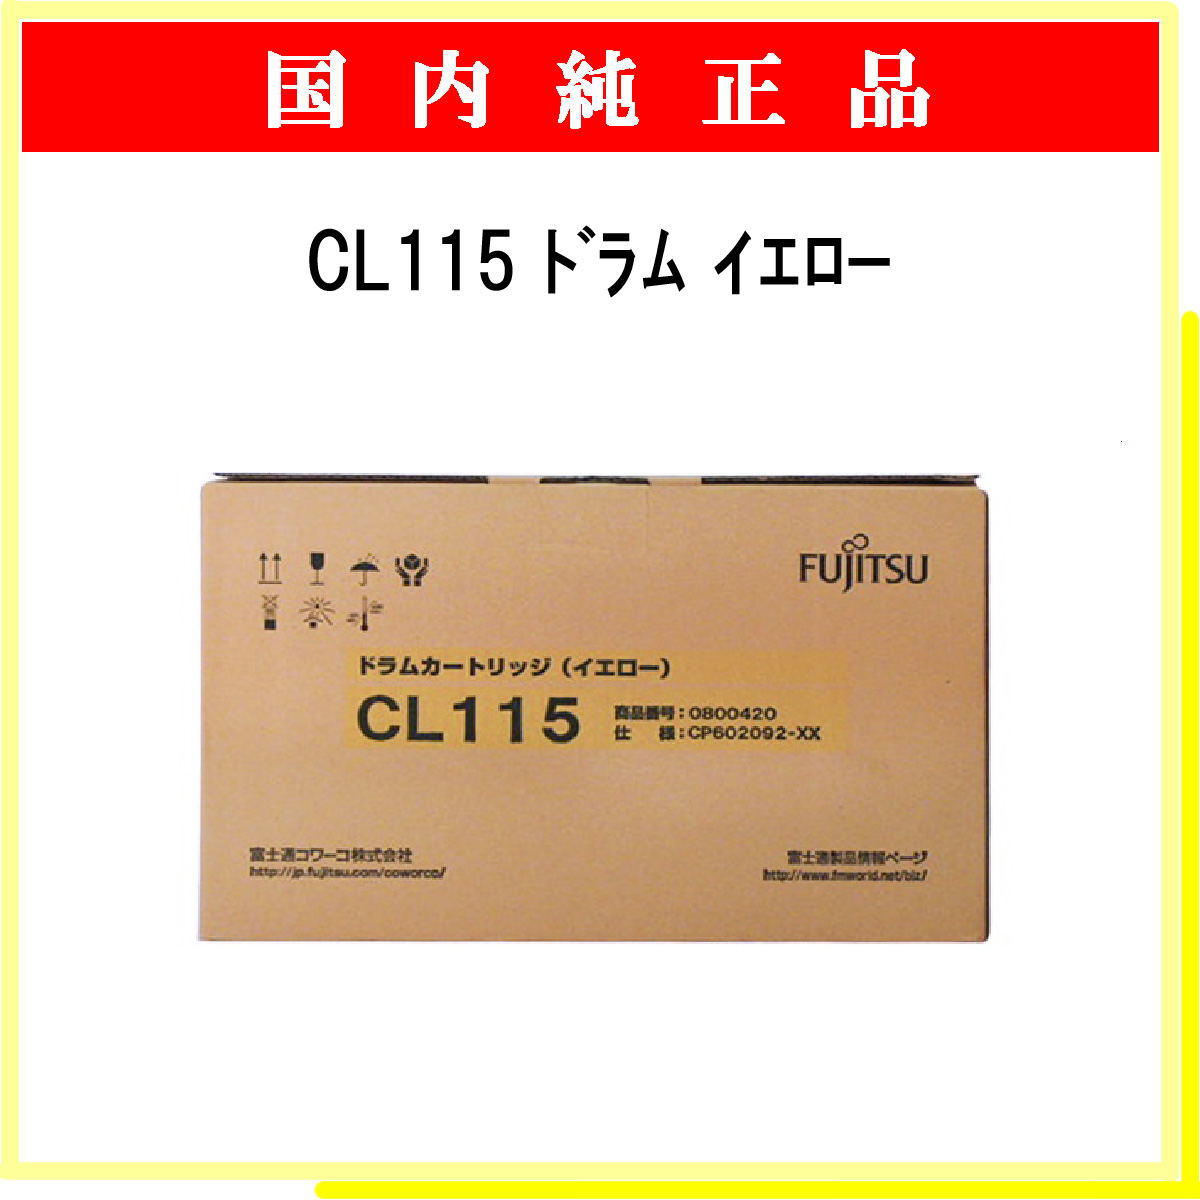 6993円 輝く高品質な 富士通 ドラムカートリッジ マゼンタ CL115 M